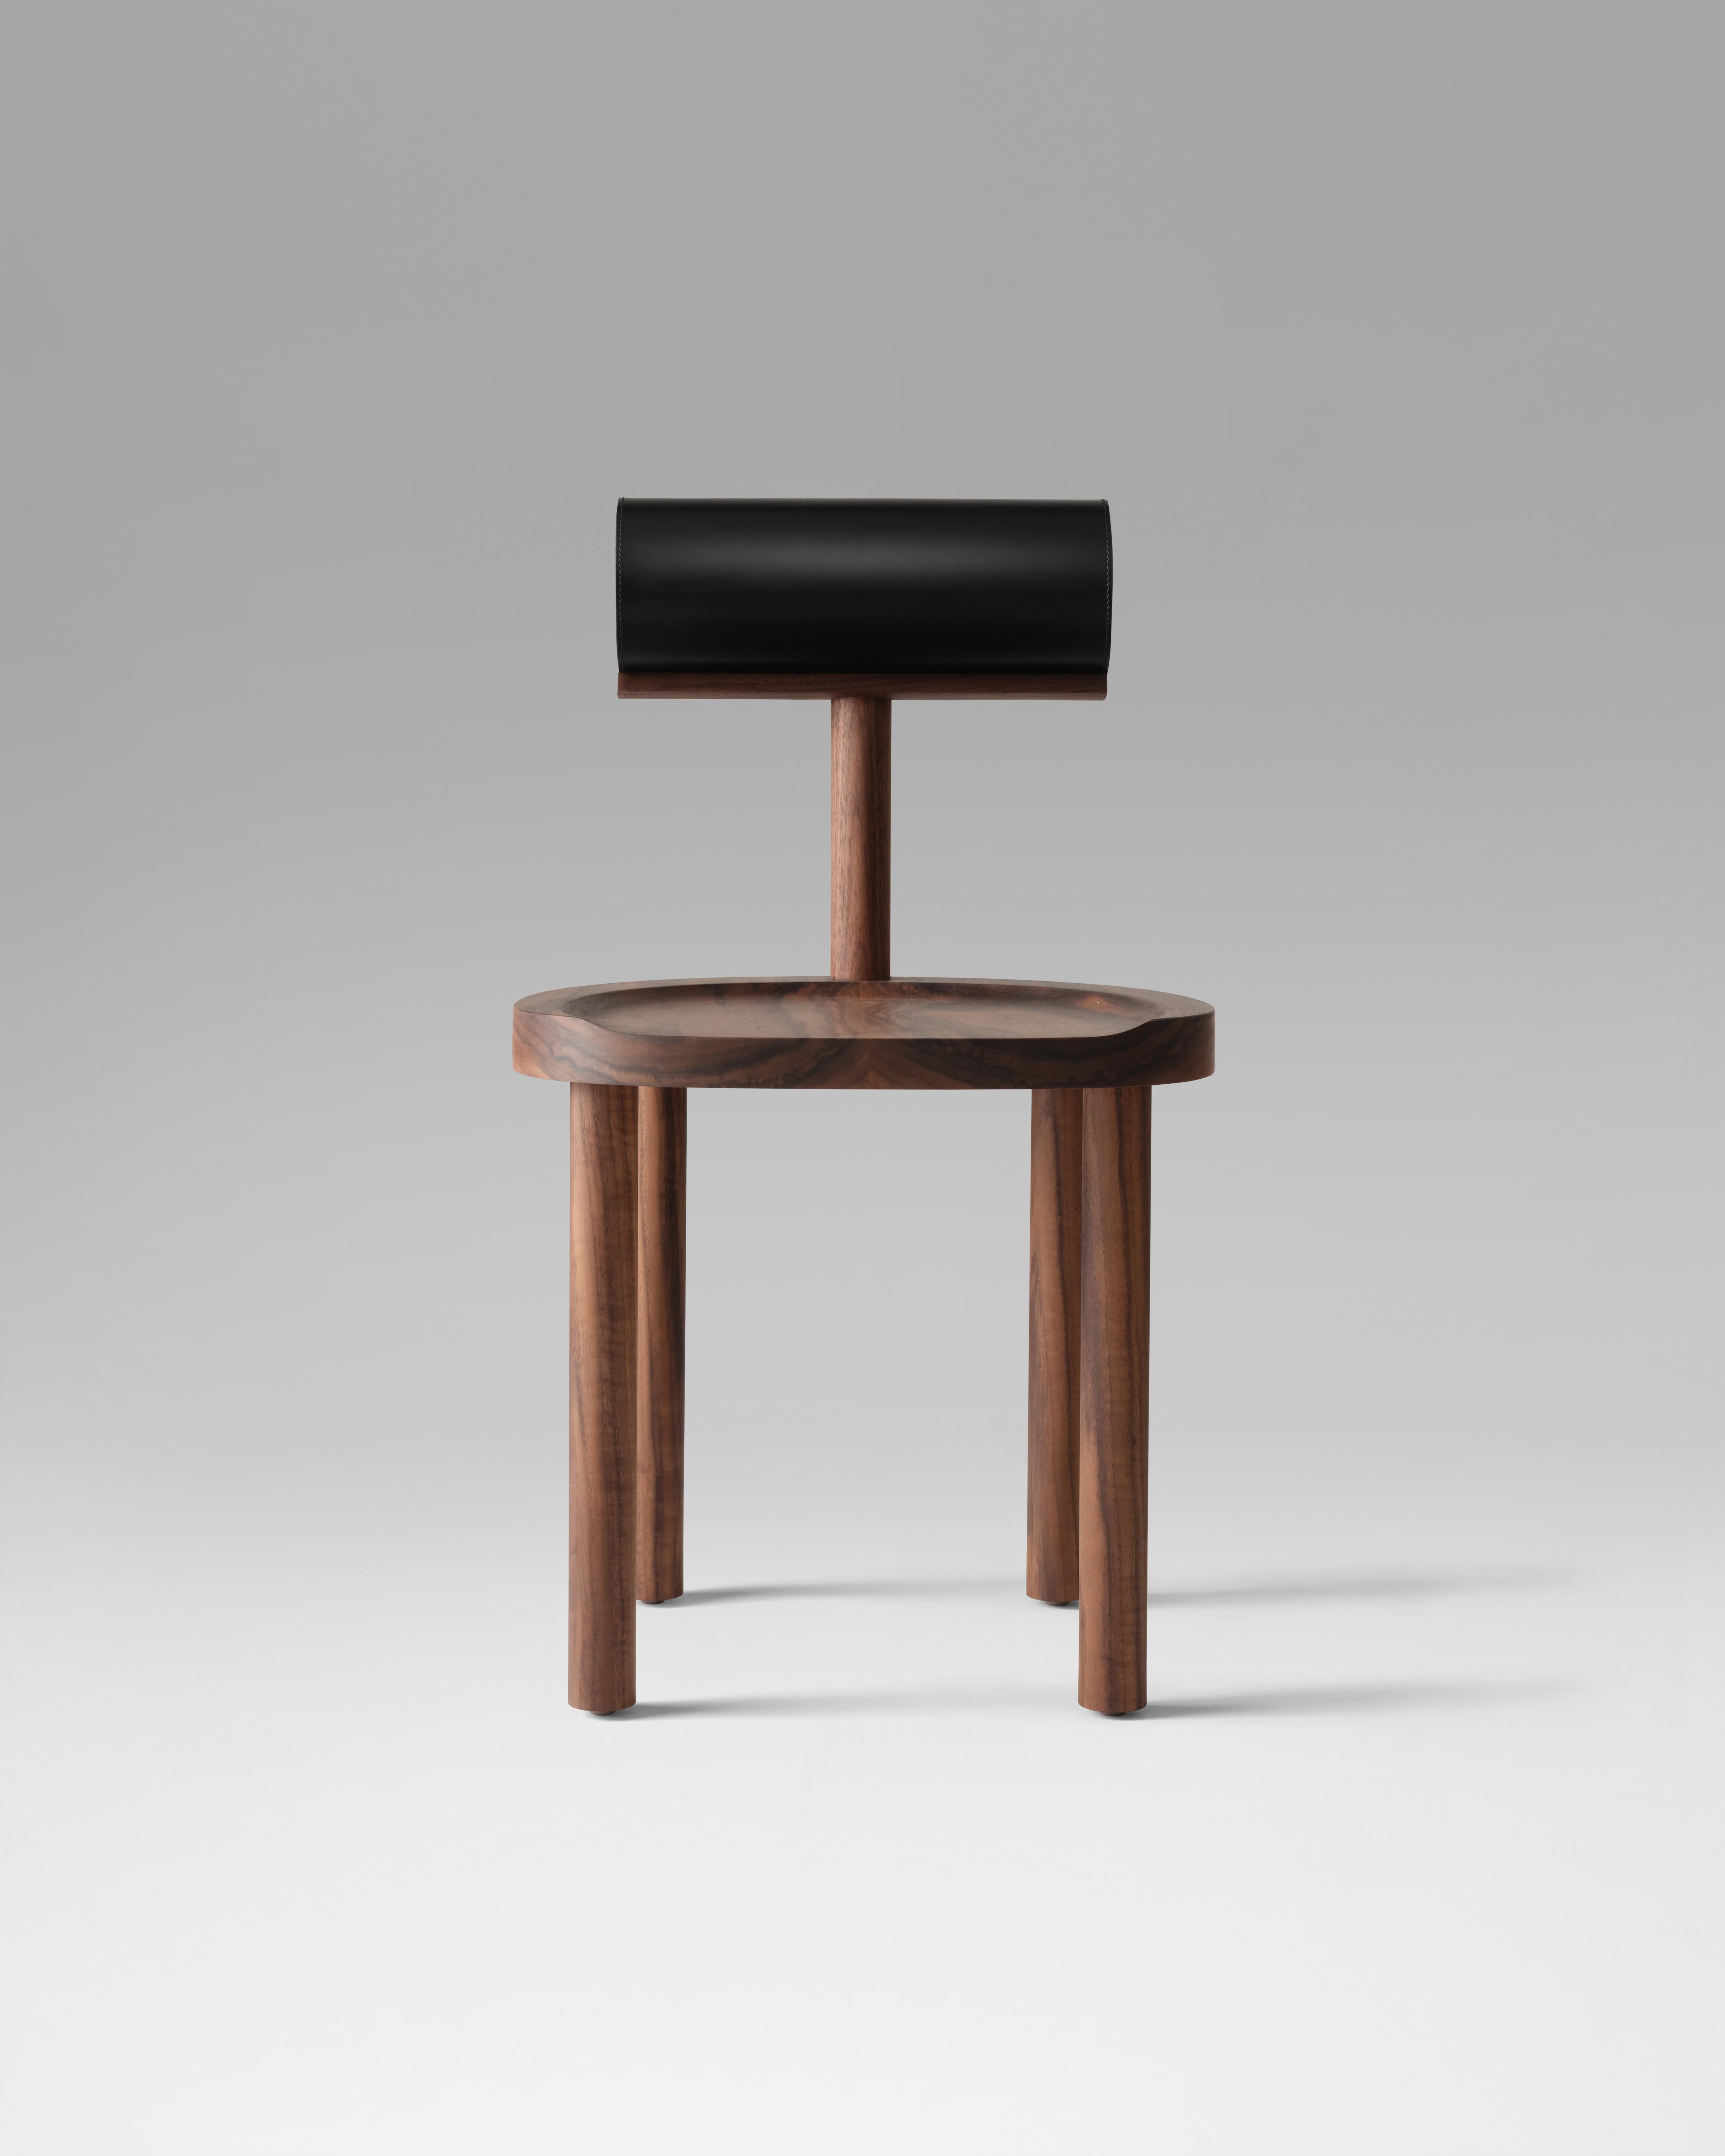 La chaise UNA croise une assise et des pieds ronds en bois avec un dossier cylindrique recouvert de cuir. L'utilisation de ces formes fluides permet de mieux mettre en valeur les détails du grain du bois et du dessus en cuir parfaitement cousu.